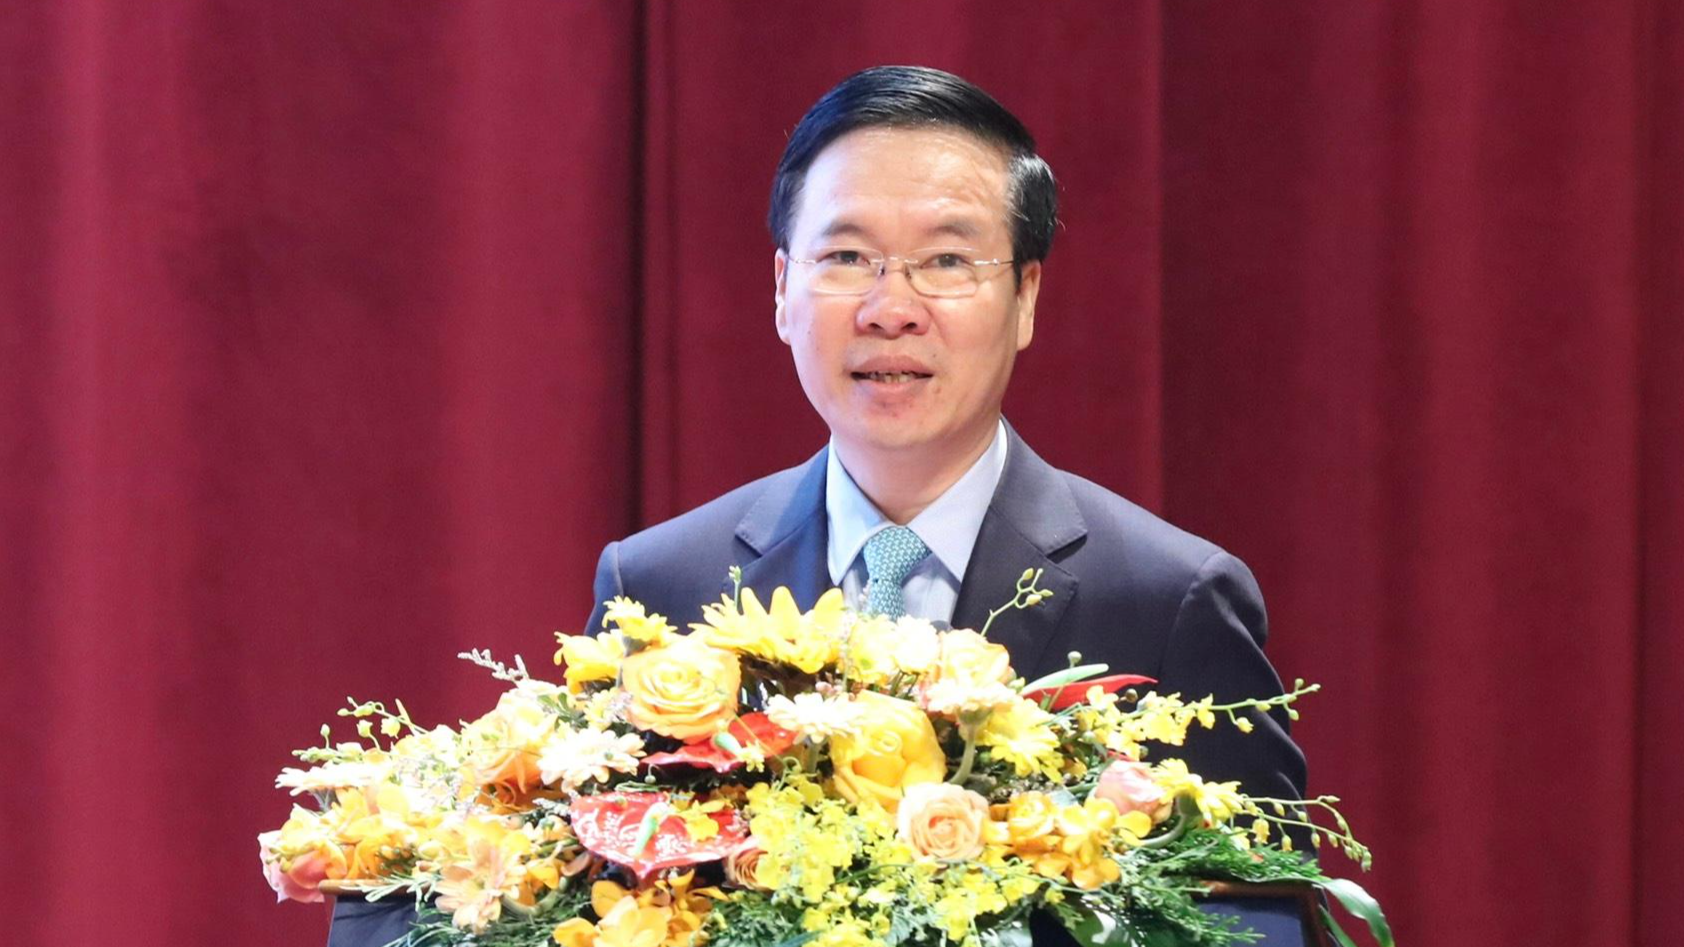 VÕ VĂN THƯỞNG  giữ chức Chủ tịch nước Cộng hòa xã hội chủ nghĩa Việt Nam nhiệm kỳ 2021-2026.